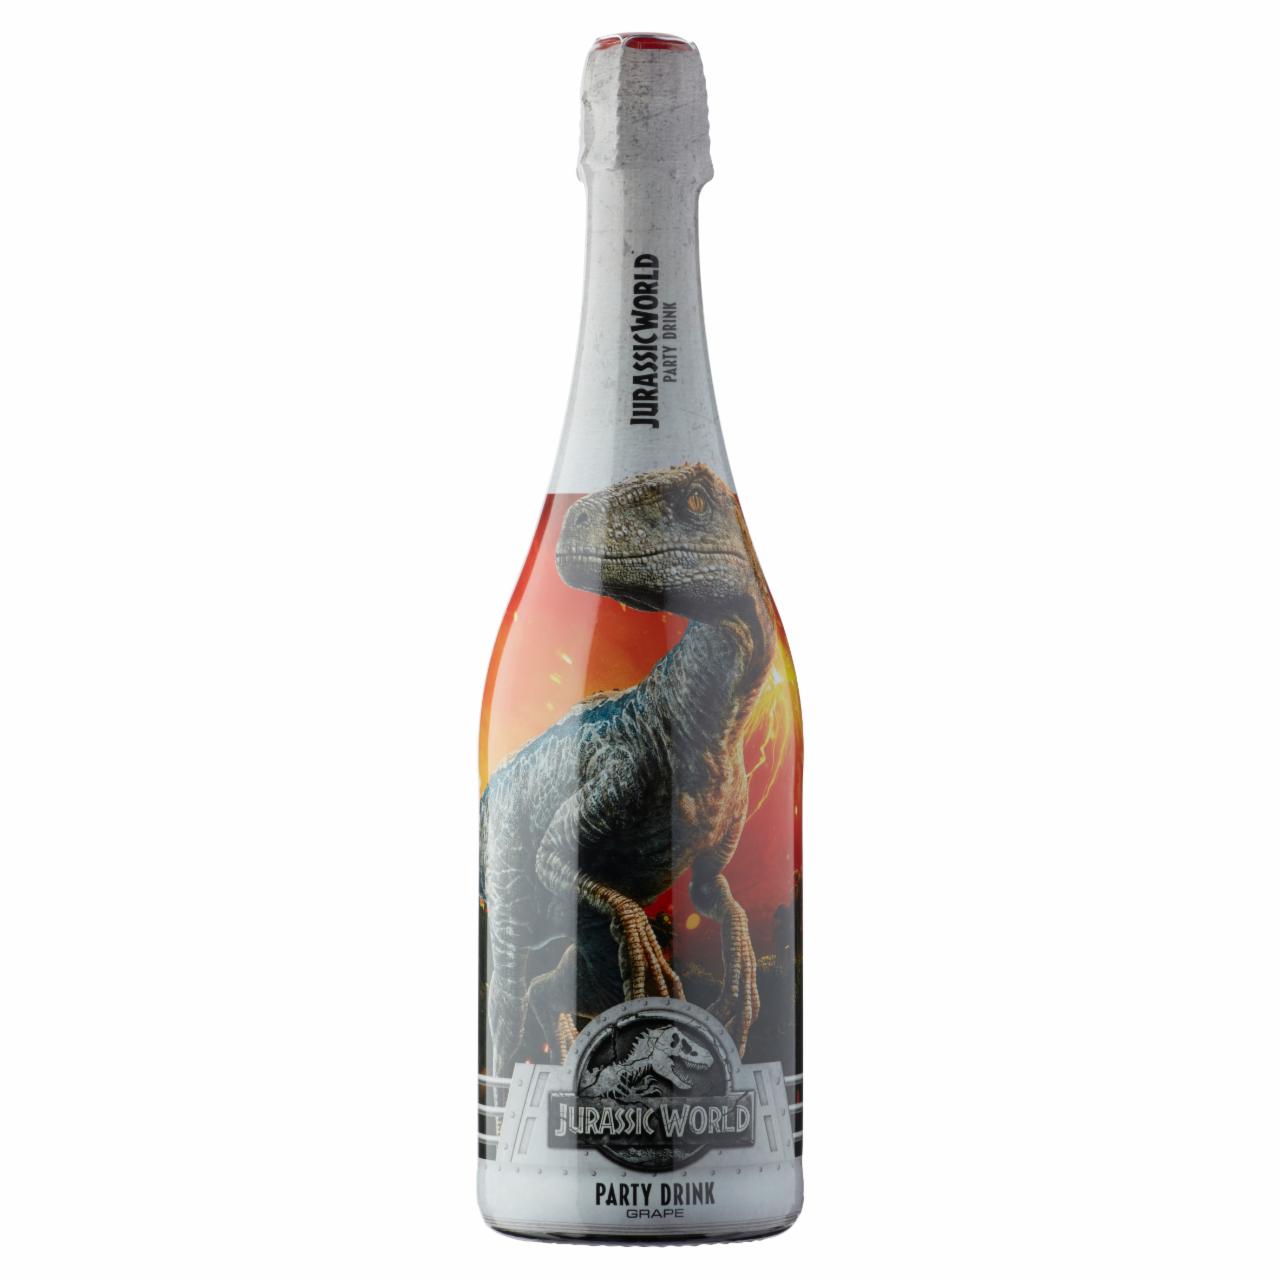 Képek - Party Drink Jurassic World alkoholmentes szénsavas szőlő ízű ital 750 ml